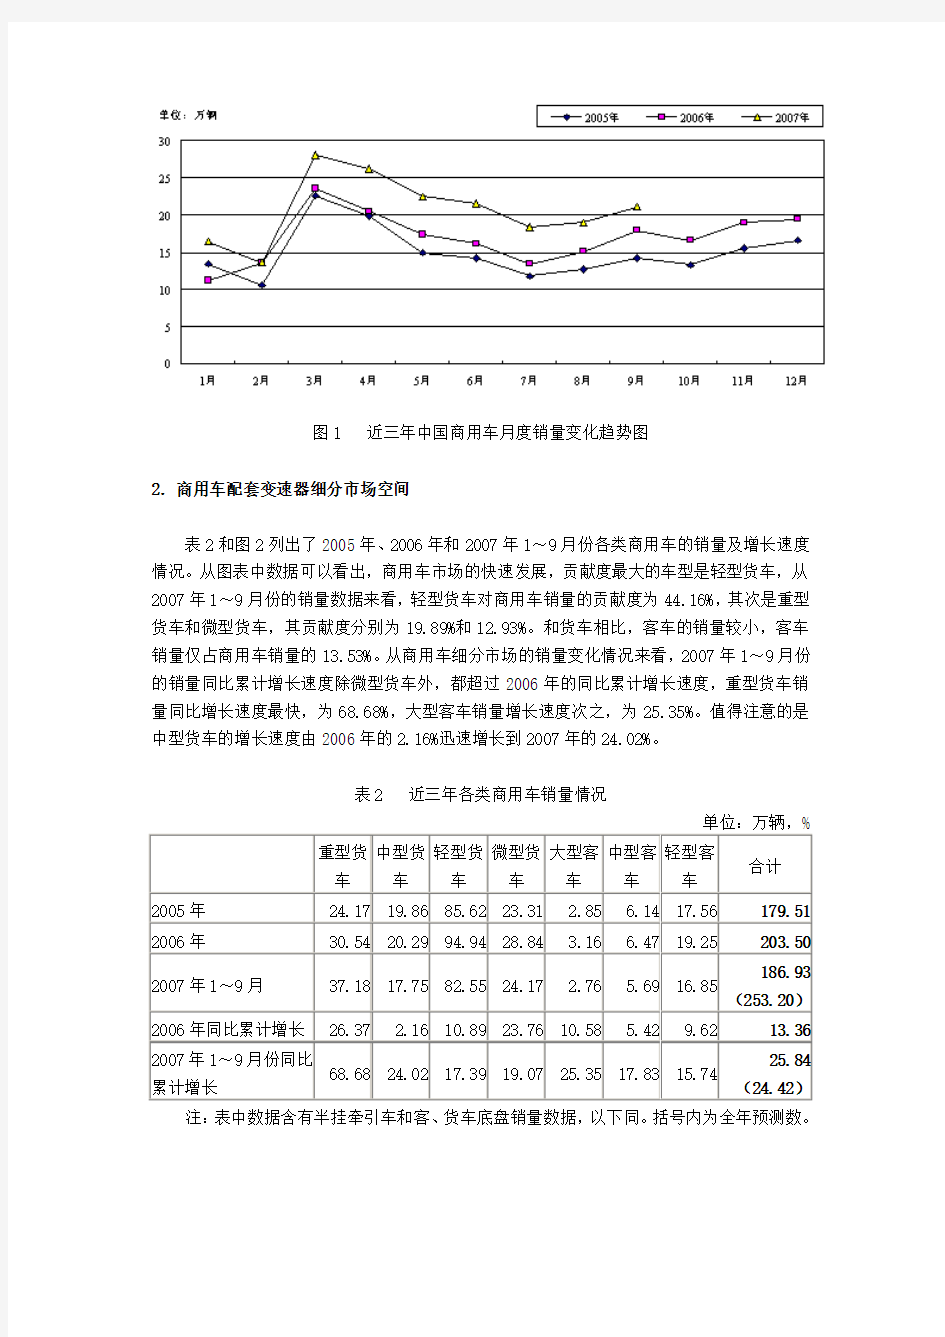 中国商用车变速器配套市场现状和发展趋势